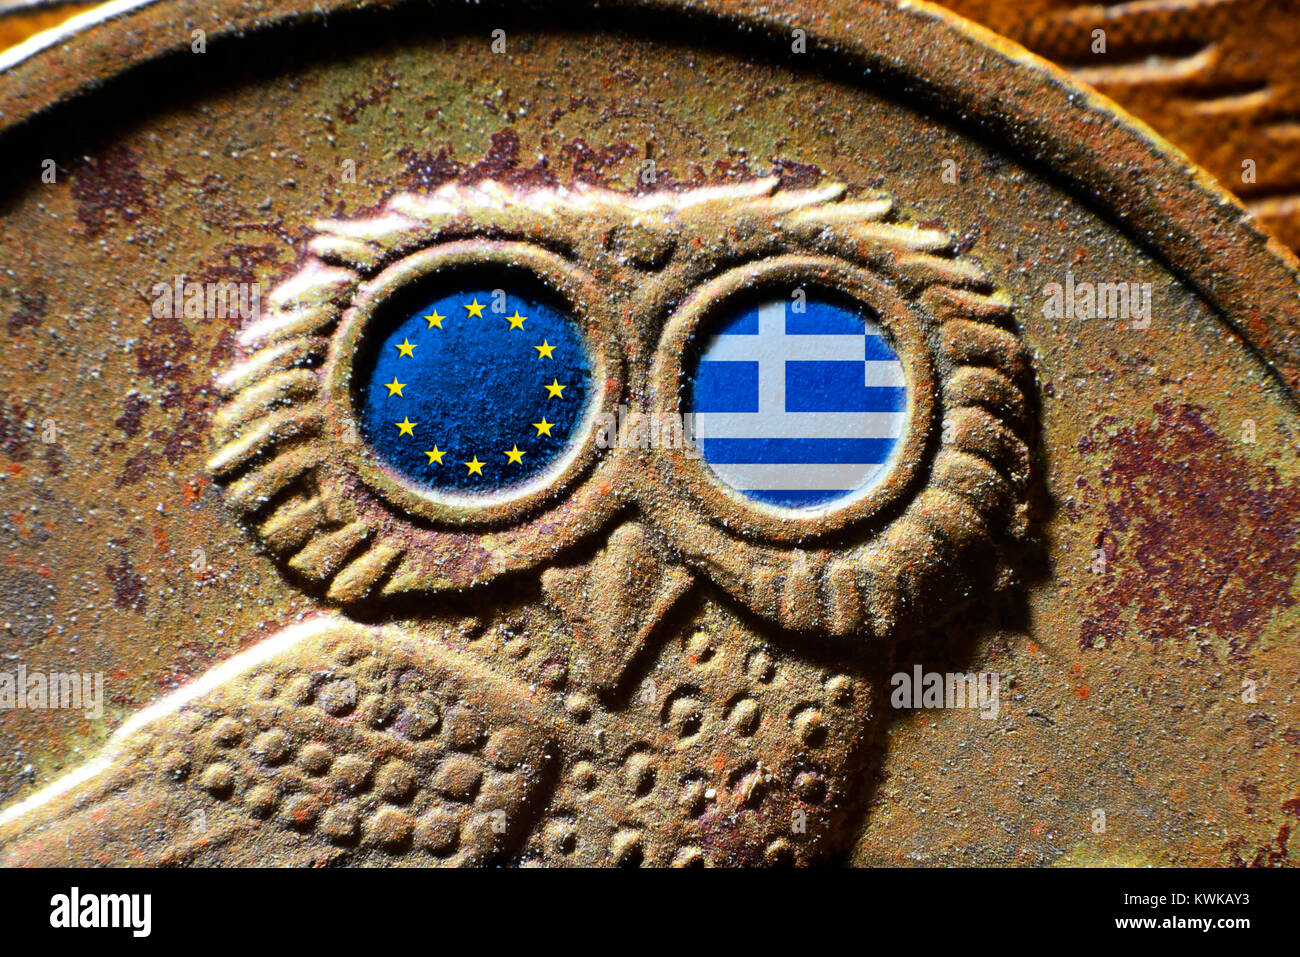 Griechische Drachme Münze mit den Flaggen der EU und Griechenland, griechischen Drachme - M?nze mit Fahnen von EU und Spanien Stockfoto